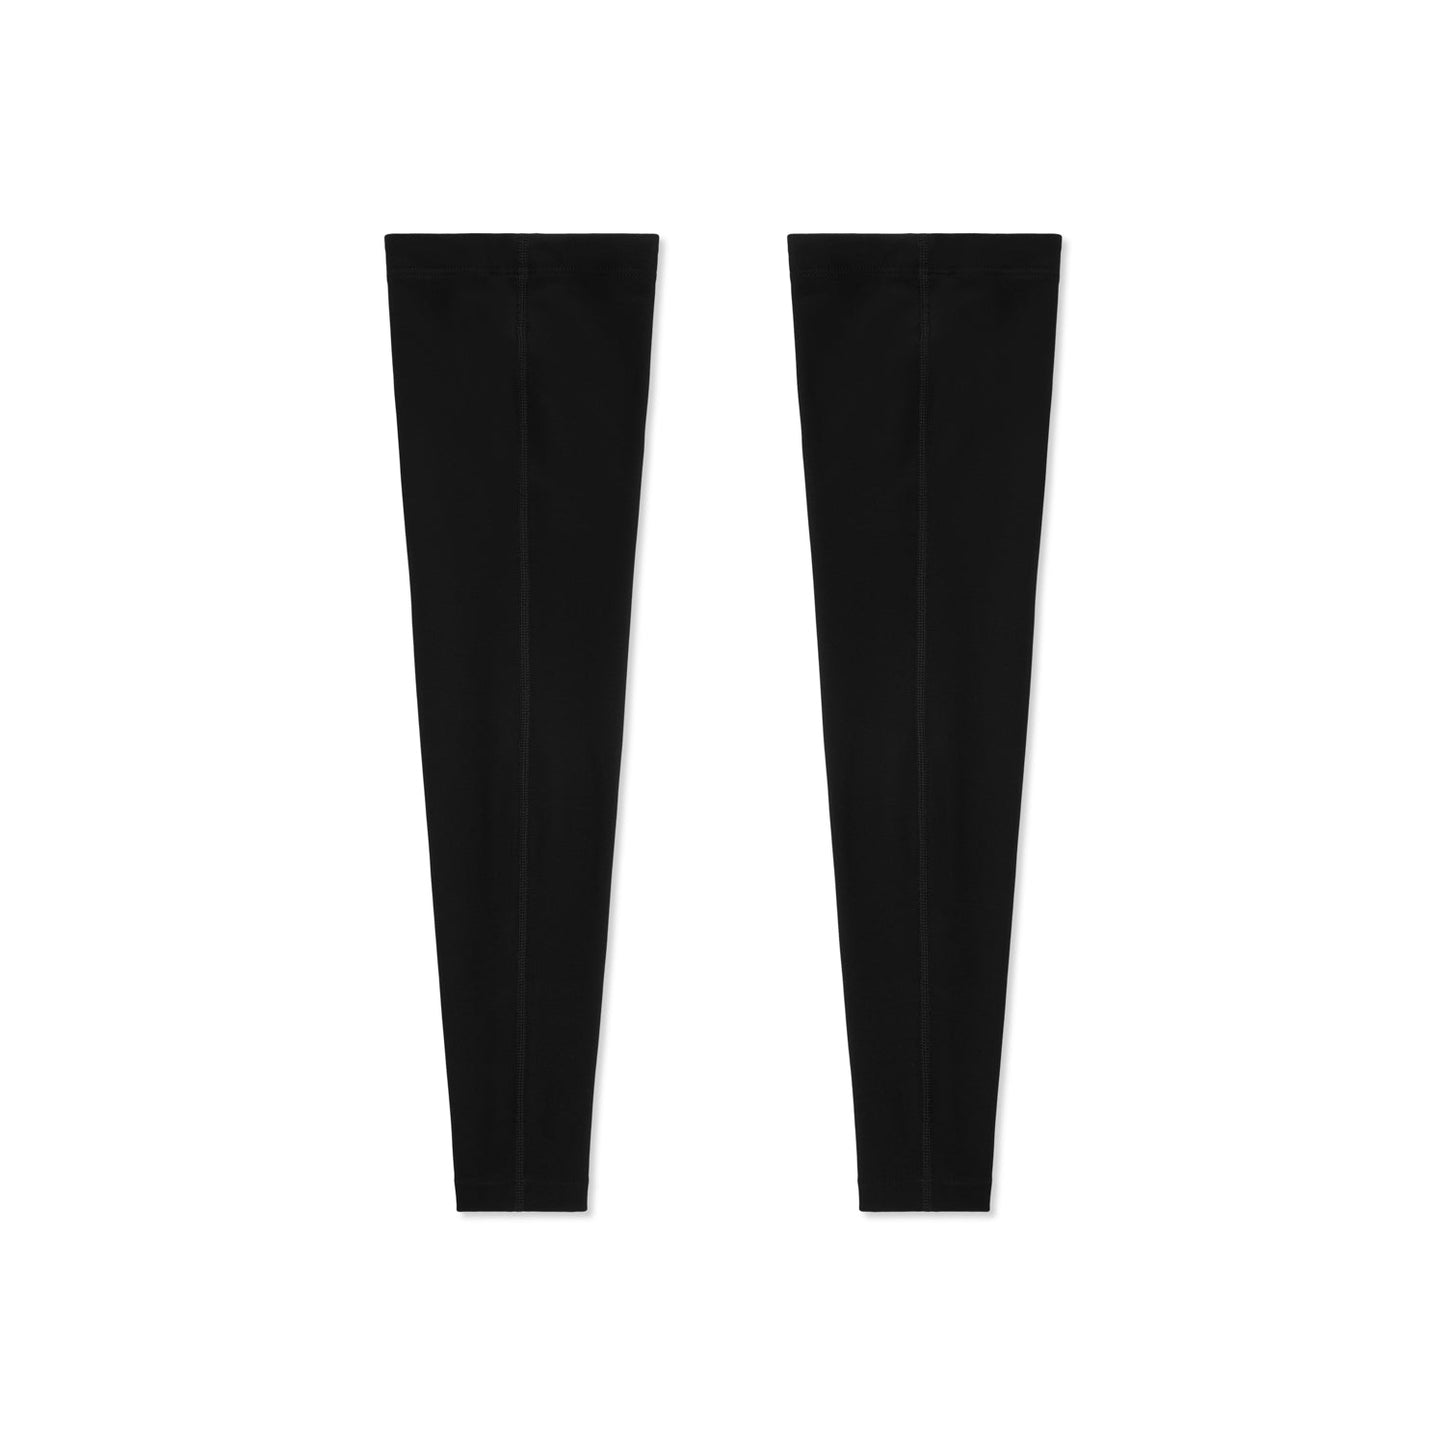 Calentadores - Negro Blanco Logo S22